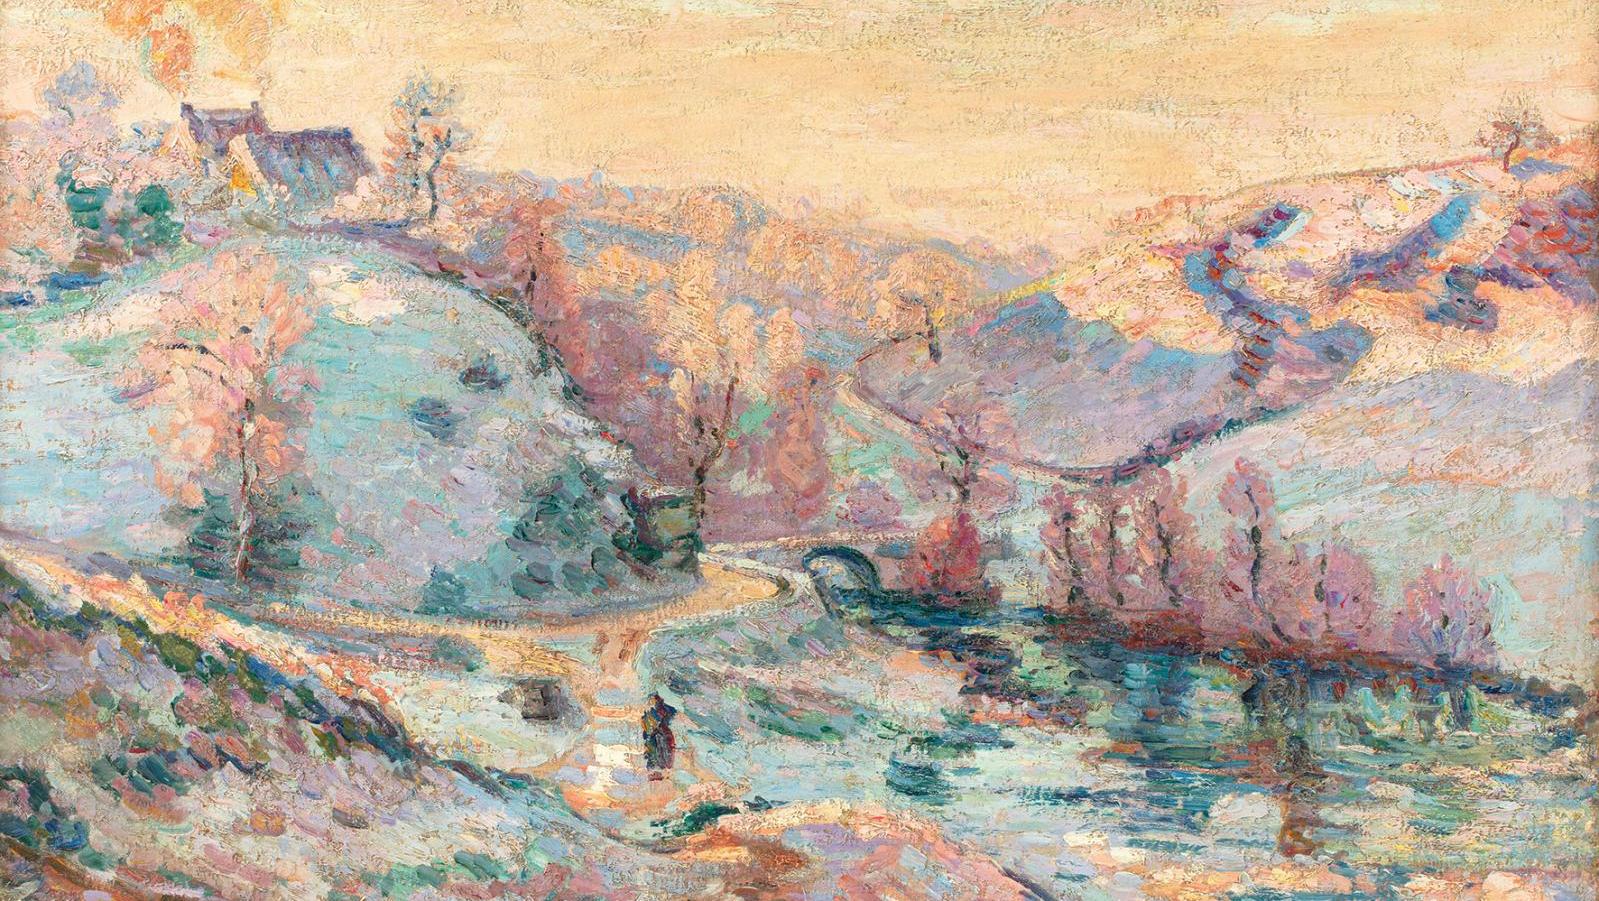 Armand Guillaumin (1841-1927), La Sedelle, neige en automne ou Gelée blanche, le... Neige impressionniste de printemps d'Armand Guillaumin